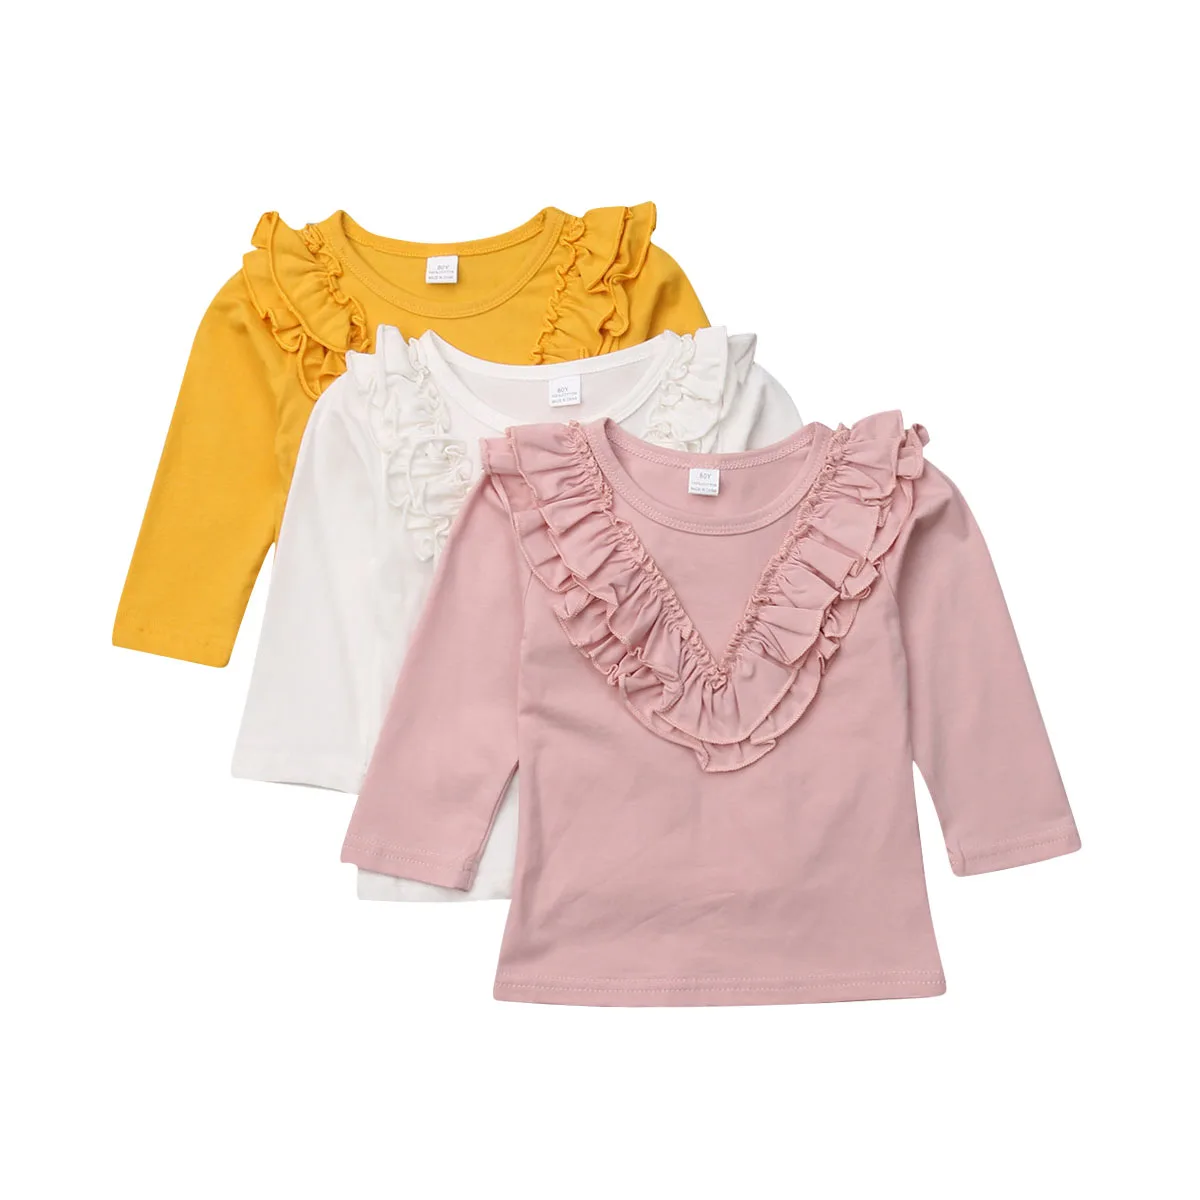 

Venta caliente volantes de algodón de las muchachas del bebé Camiseta de manga larga 0-5 año otoño ropa de los niños Tops blusa